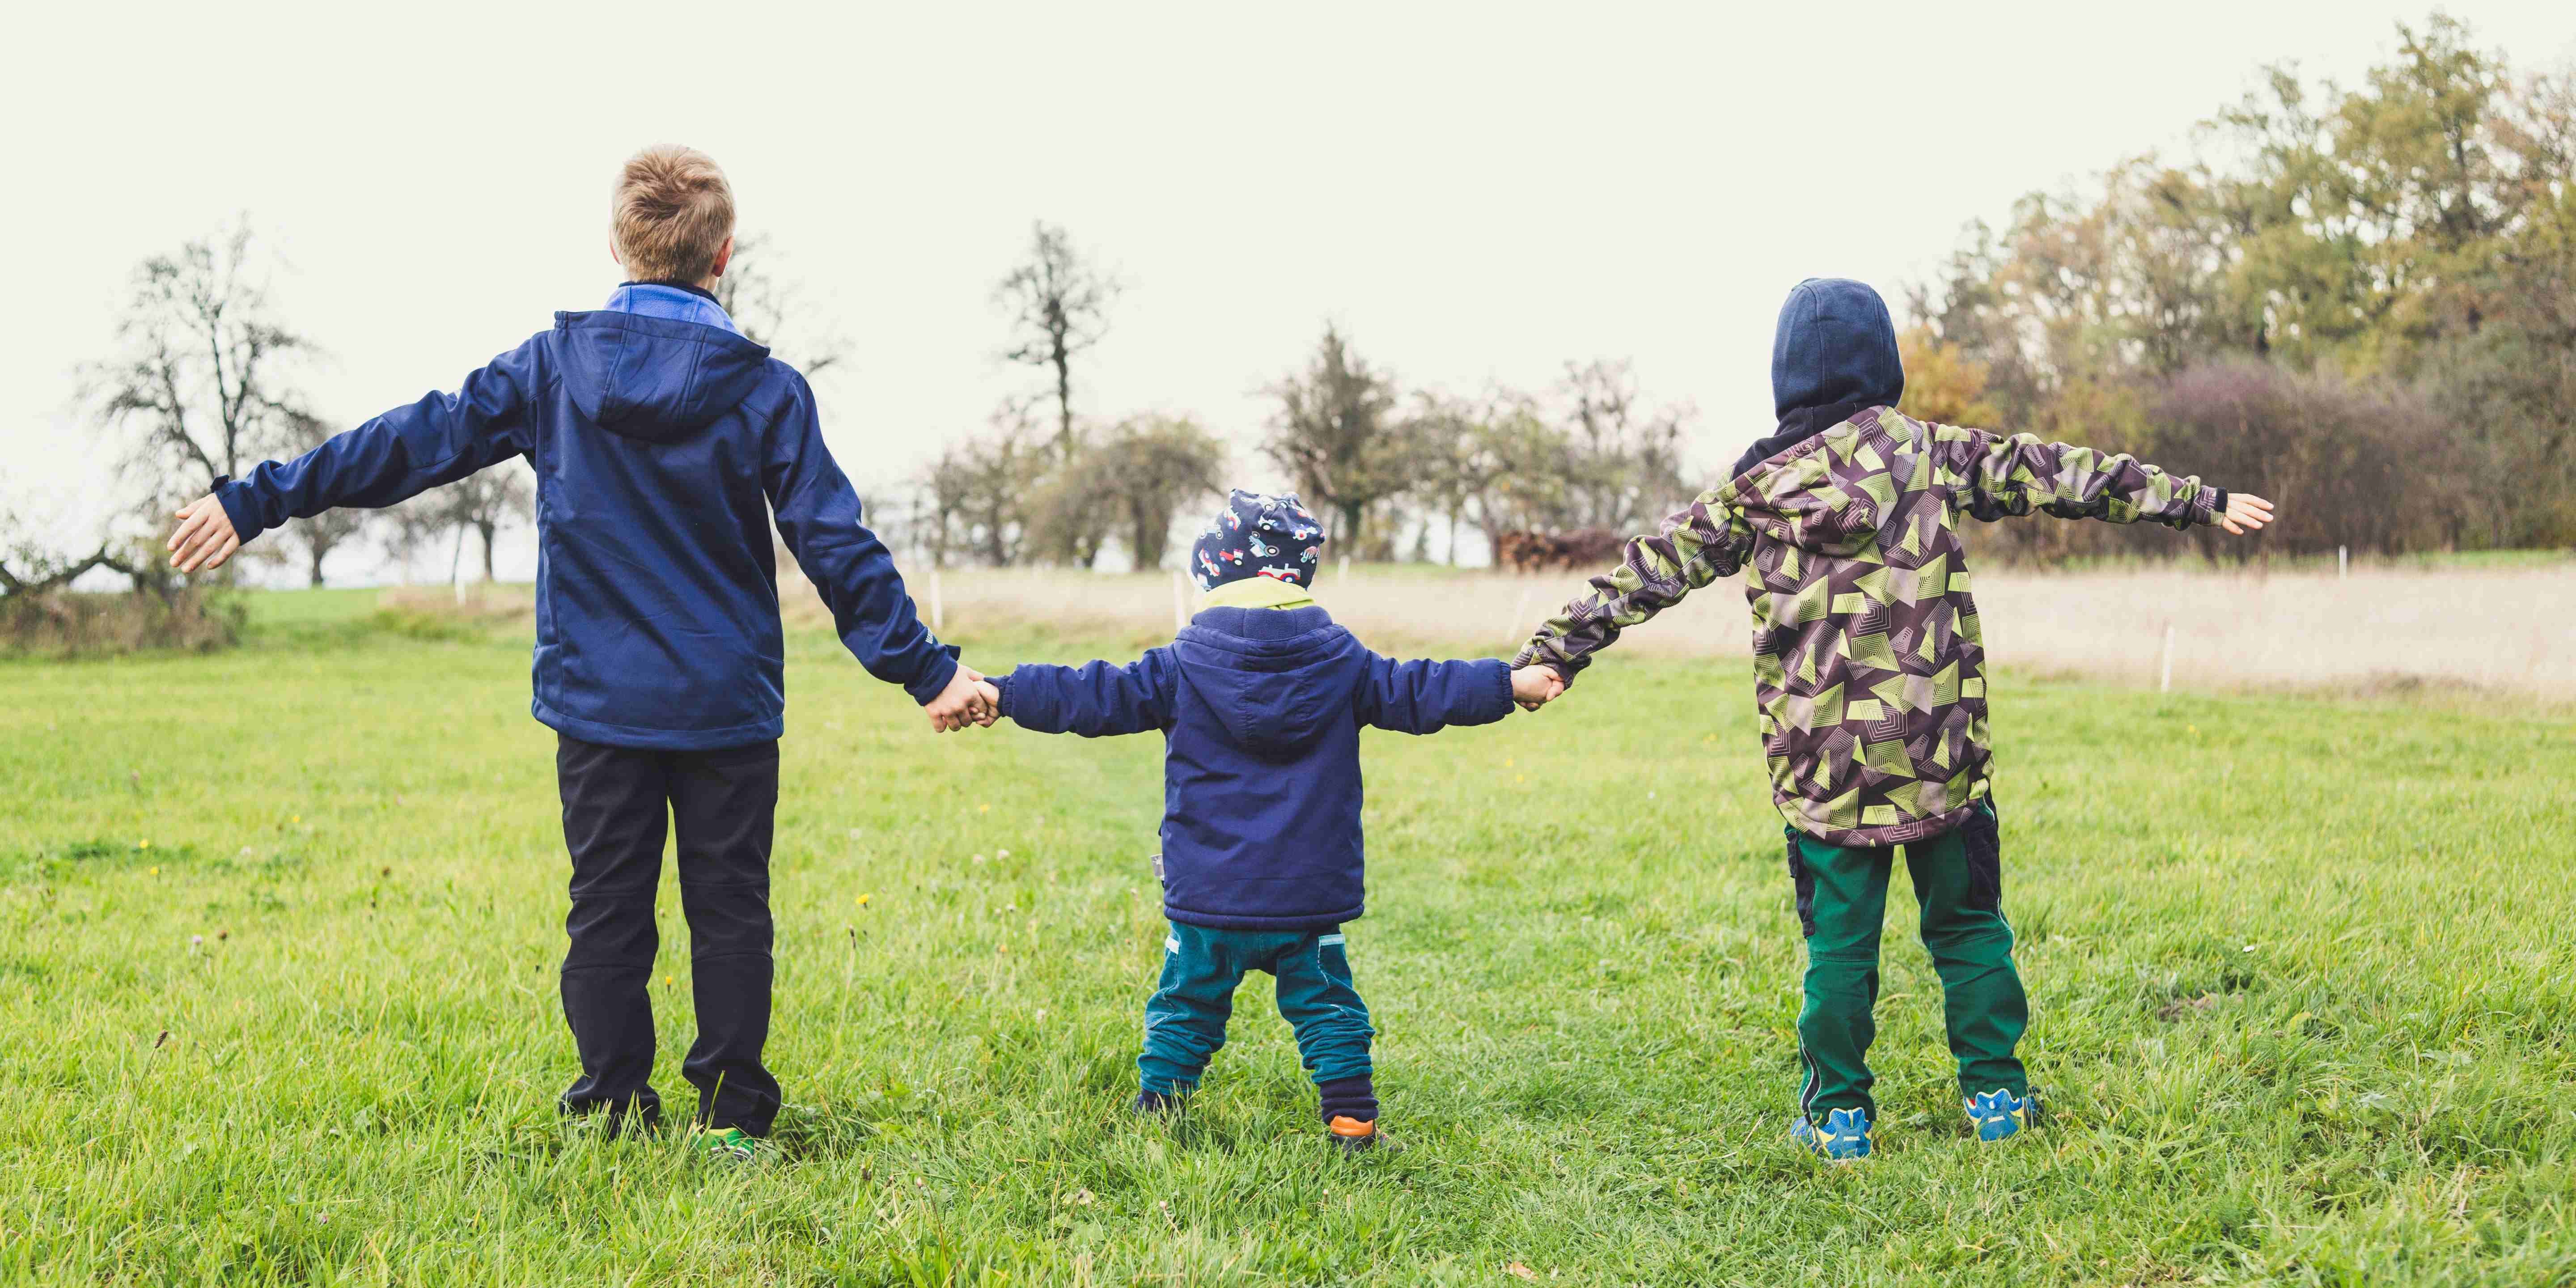 Kolme eri-ikäistä lasta pitelee toisiaan kädestä nurmikolla.